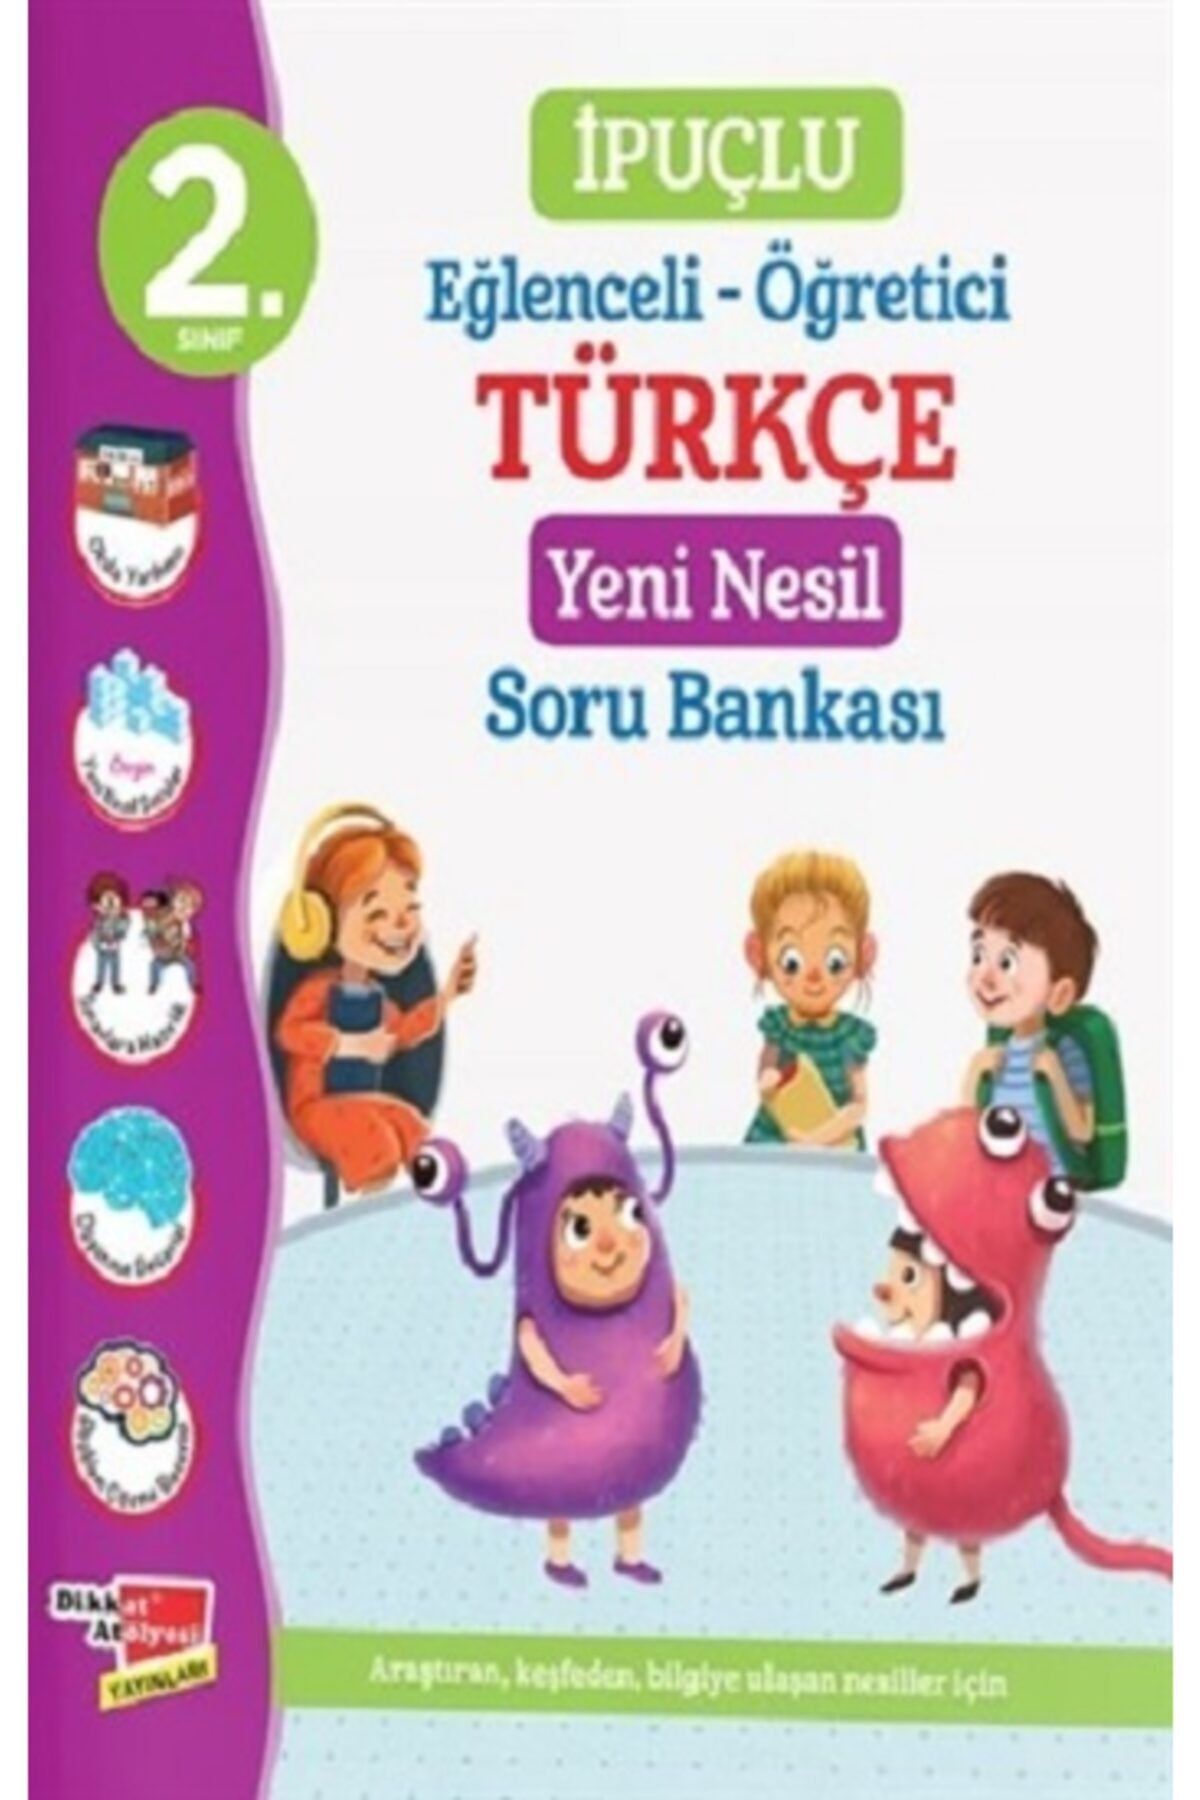 Dikkat Atölyesi Yayınları 2. Sınıf Ipuçlu Eğlenceli - Öğretici Türkçe Yeni Nesil Soru Bankası